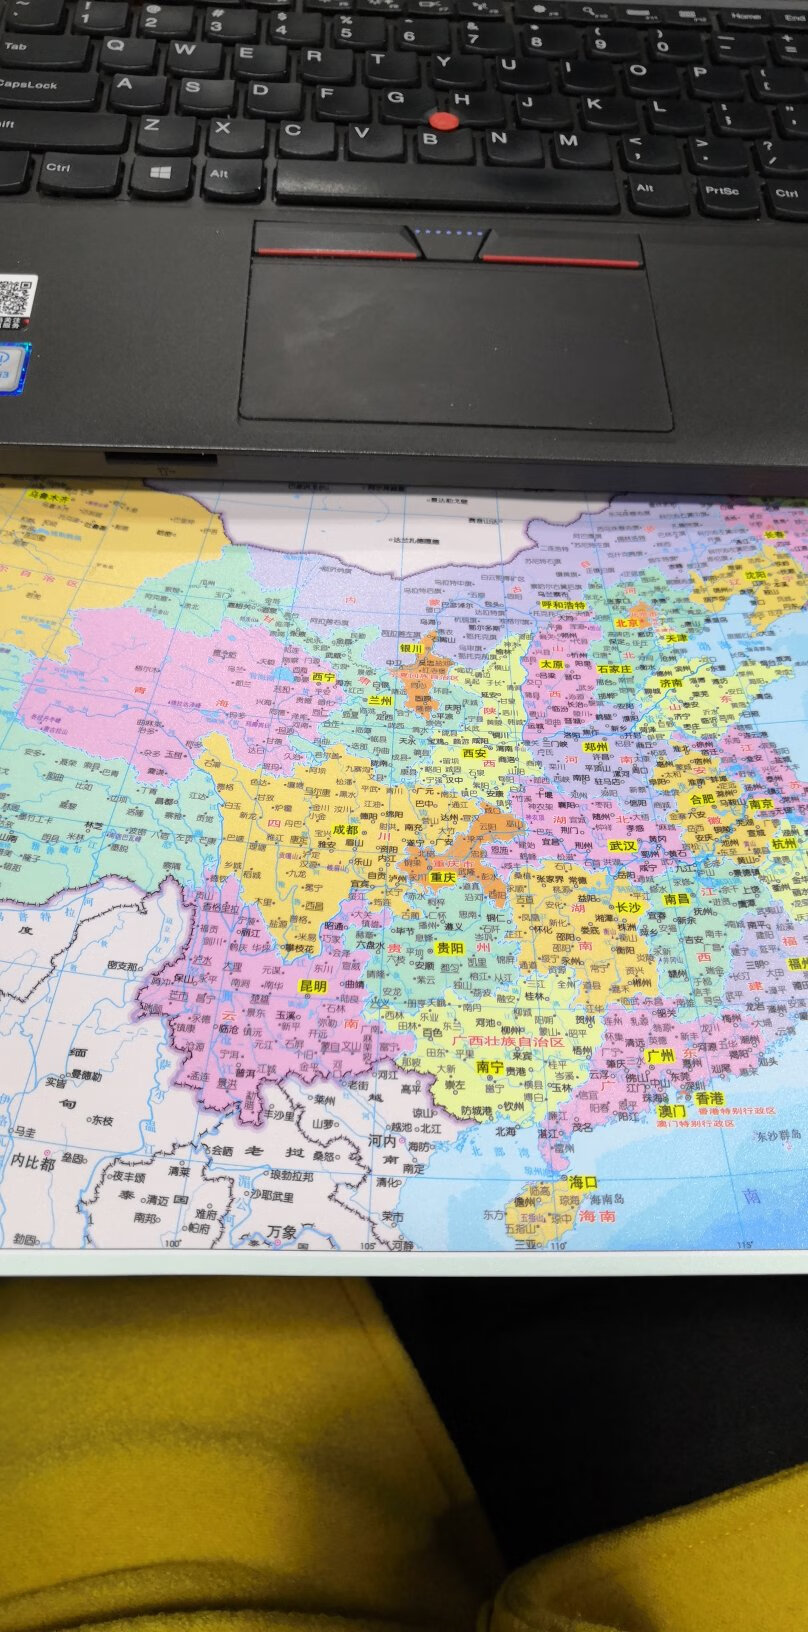 这图真是物超所值啊，真的很好的地图哦，尤其是中国地图。很多城市都有哦 很全的。